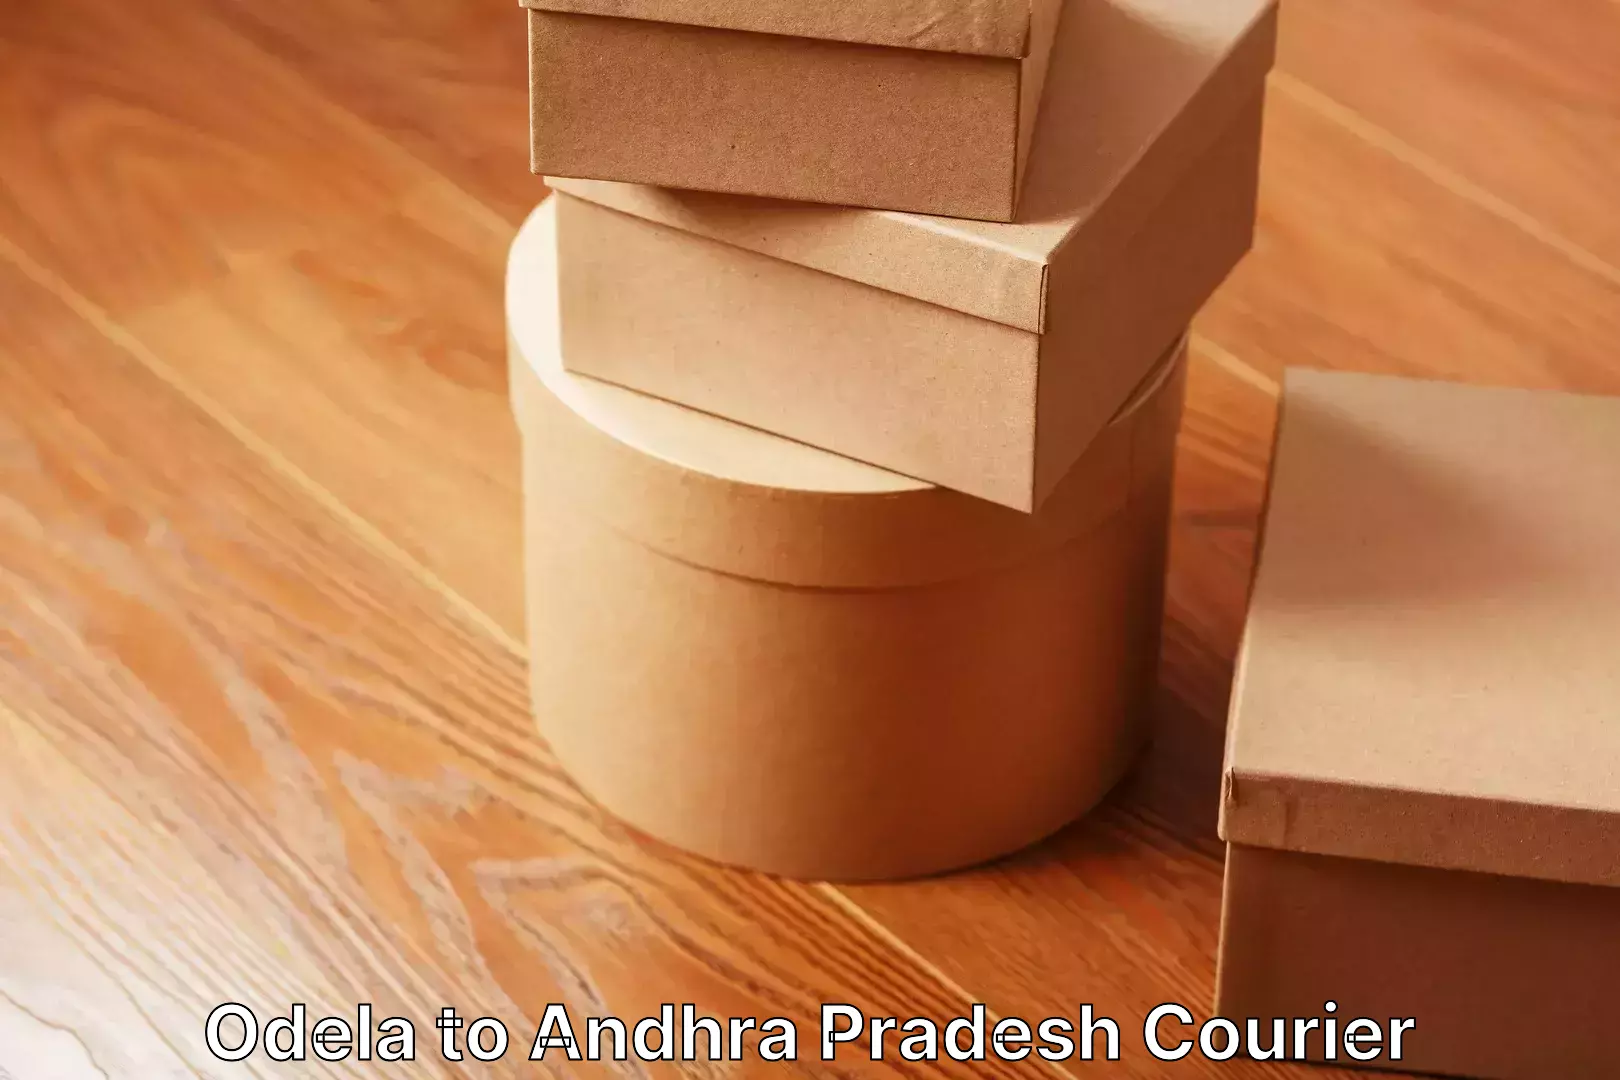 Residential furniture transport Odela to Andhra Pradesh